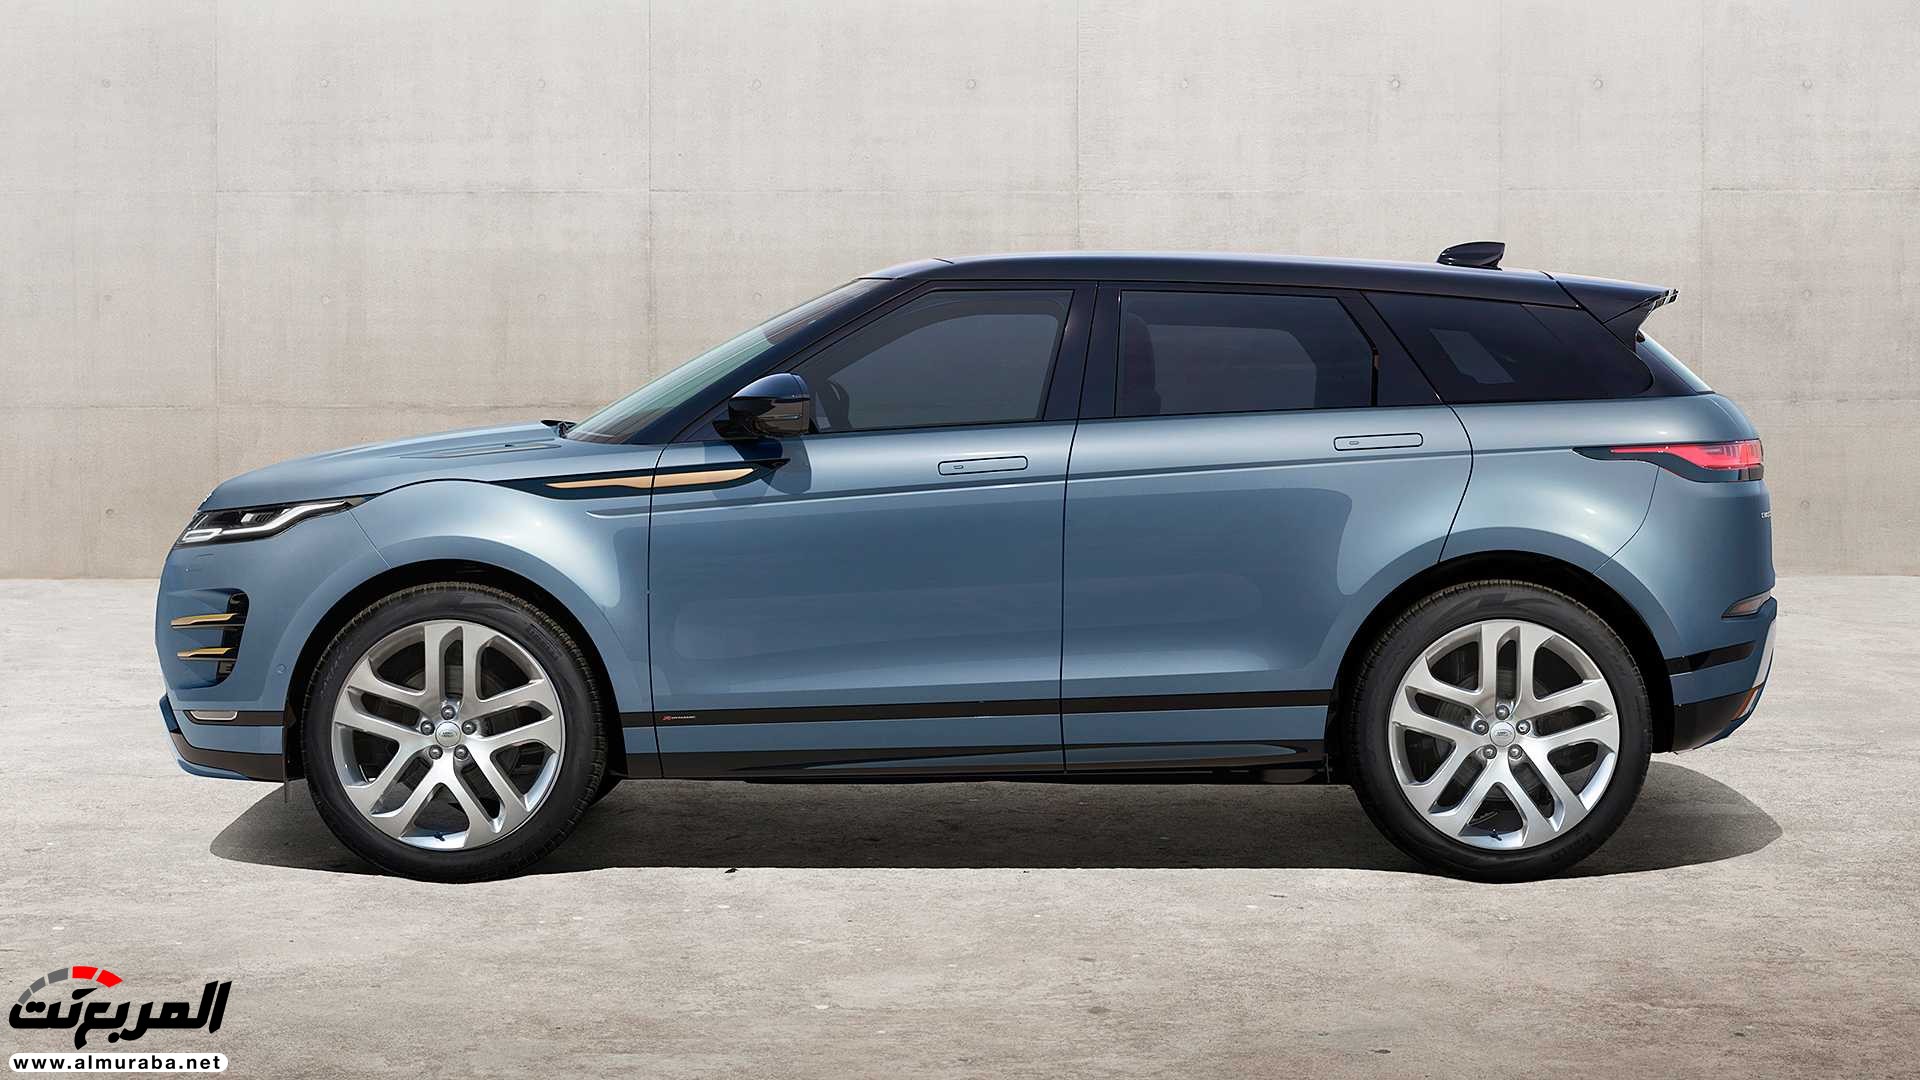 اهم 7 معلومات عن رنج روفر ايفوك 2020 الجديدة كلياً Range Rover Evoque 122